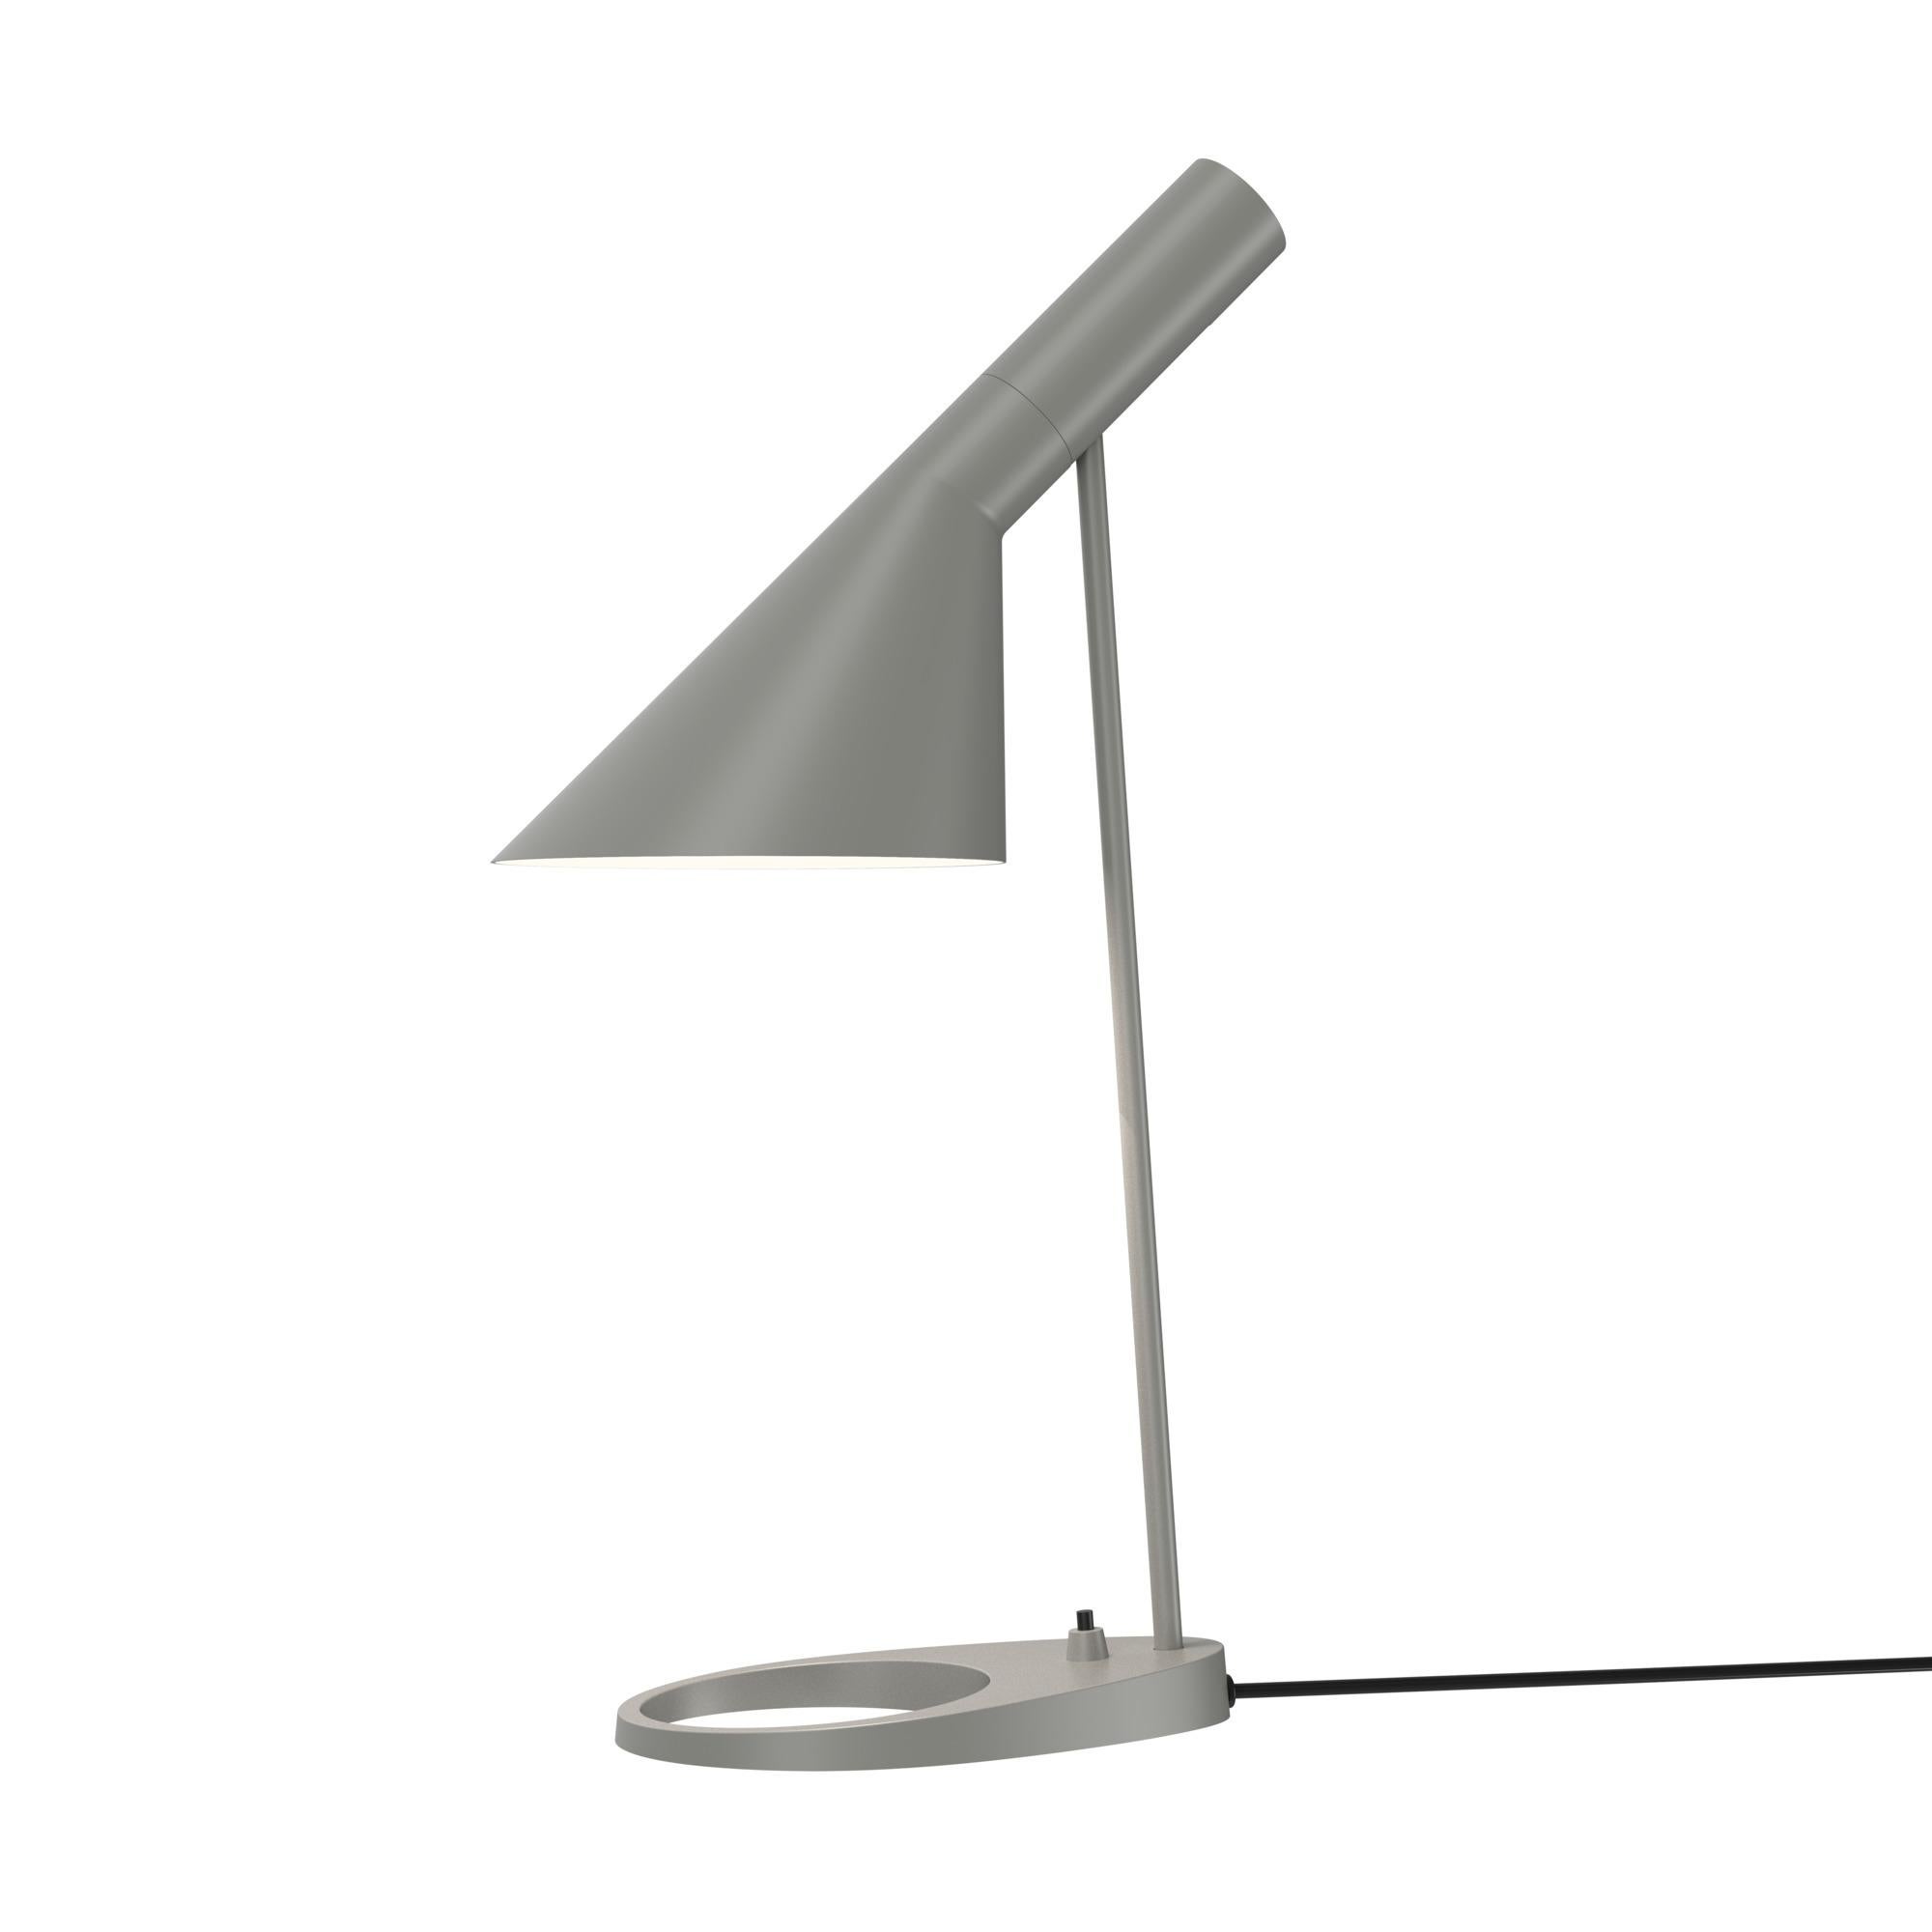 Arne Jacobsen AJ Table Lamp in White for Louis Poulsen For Sale 8